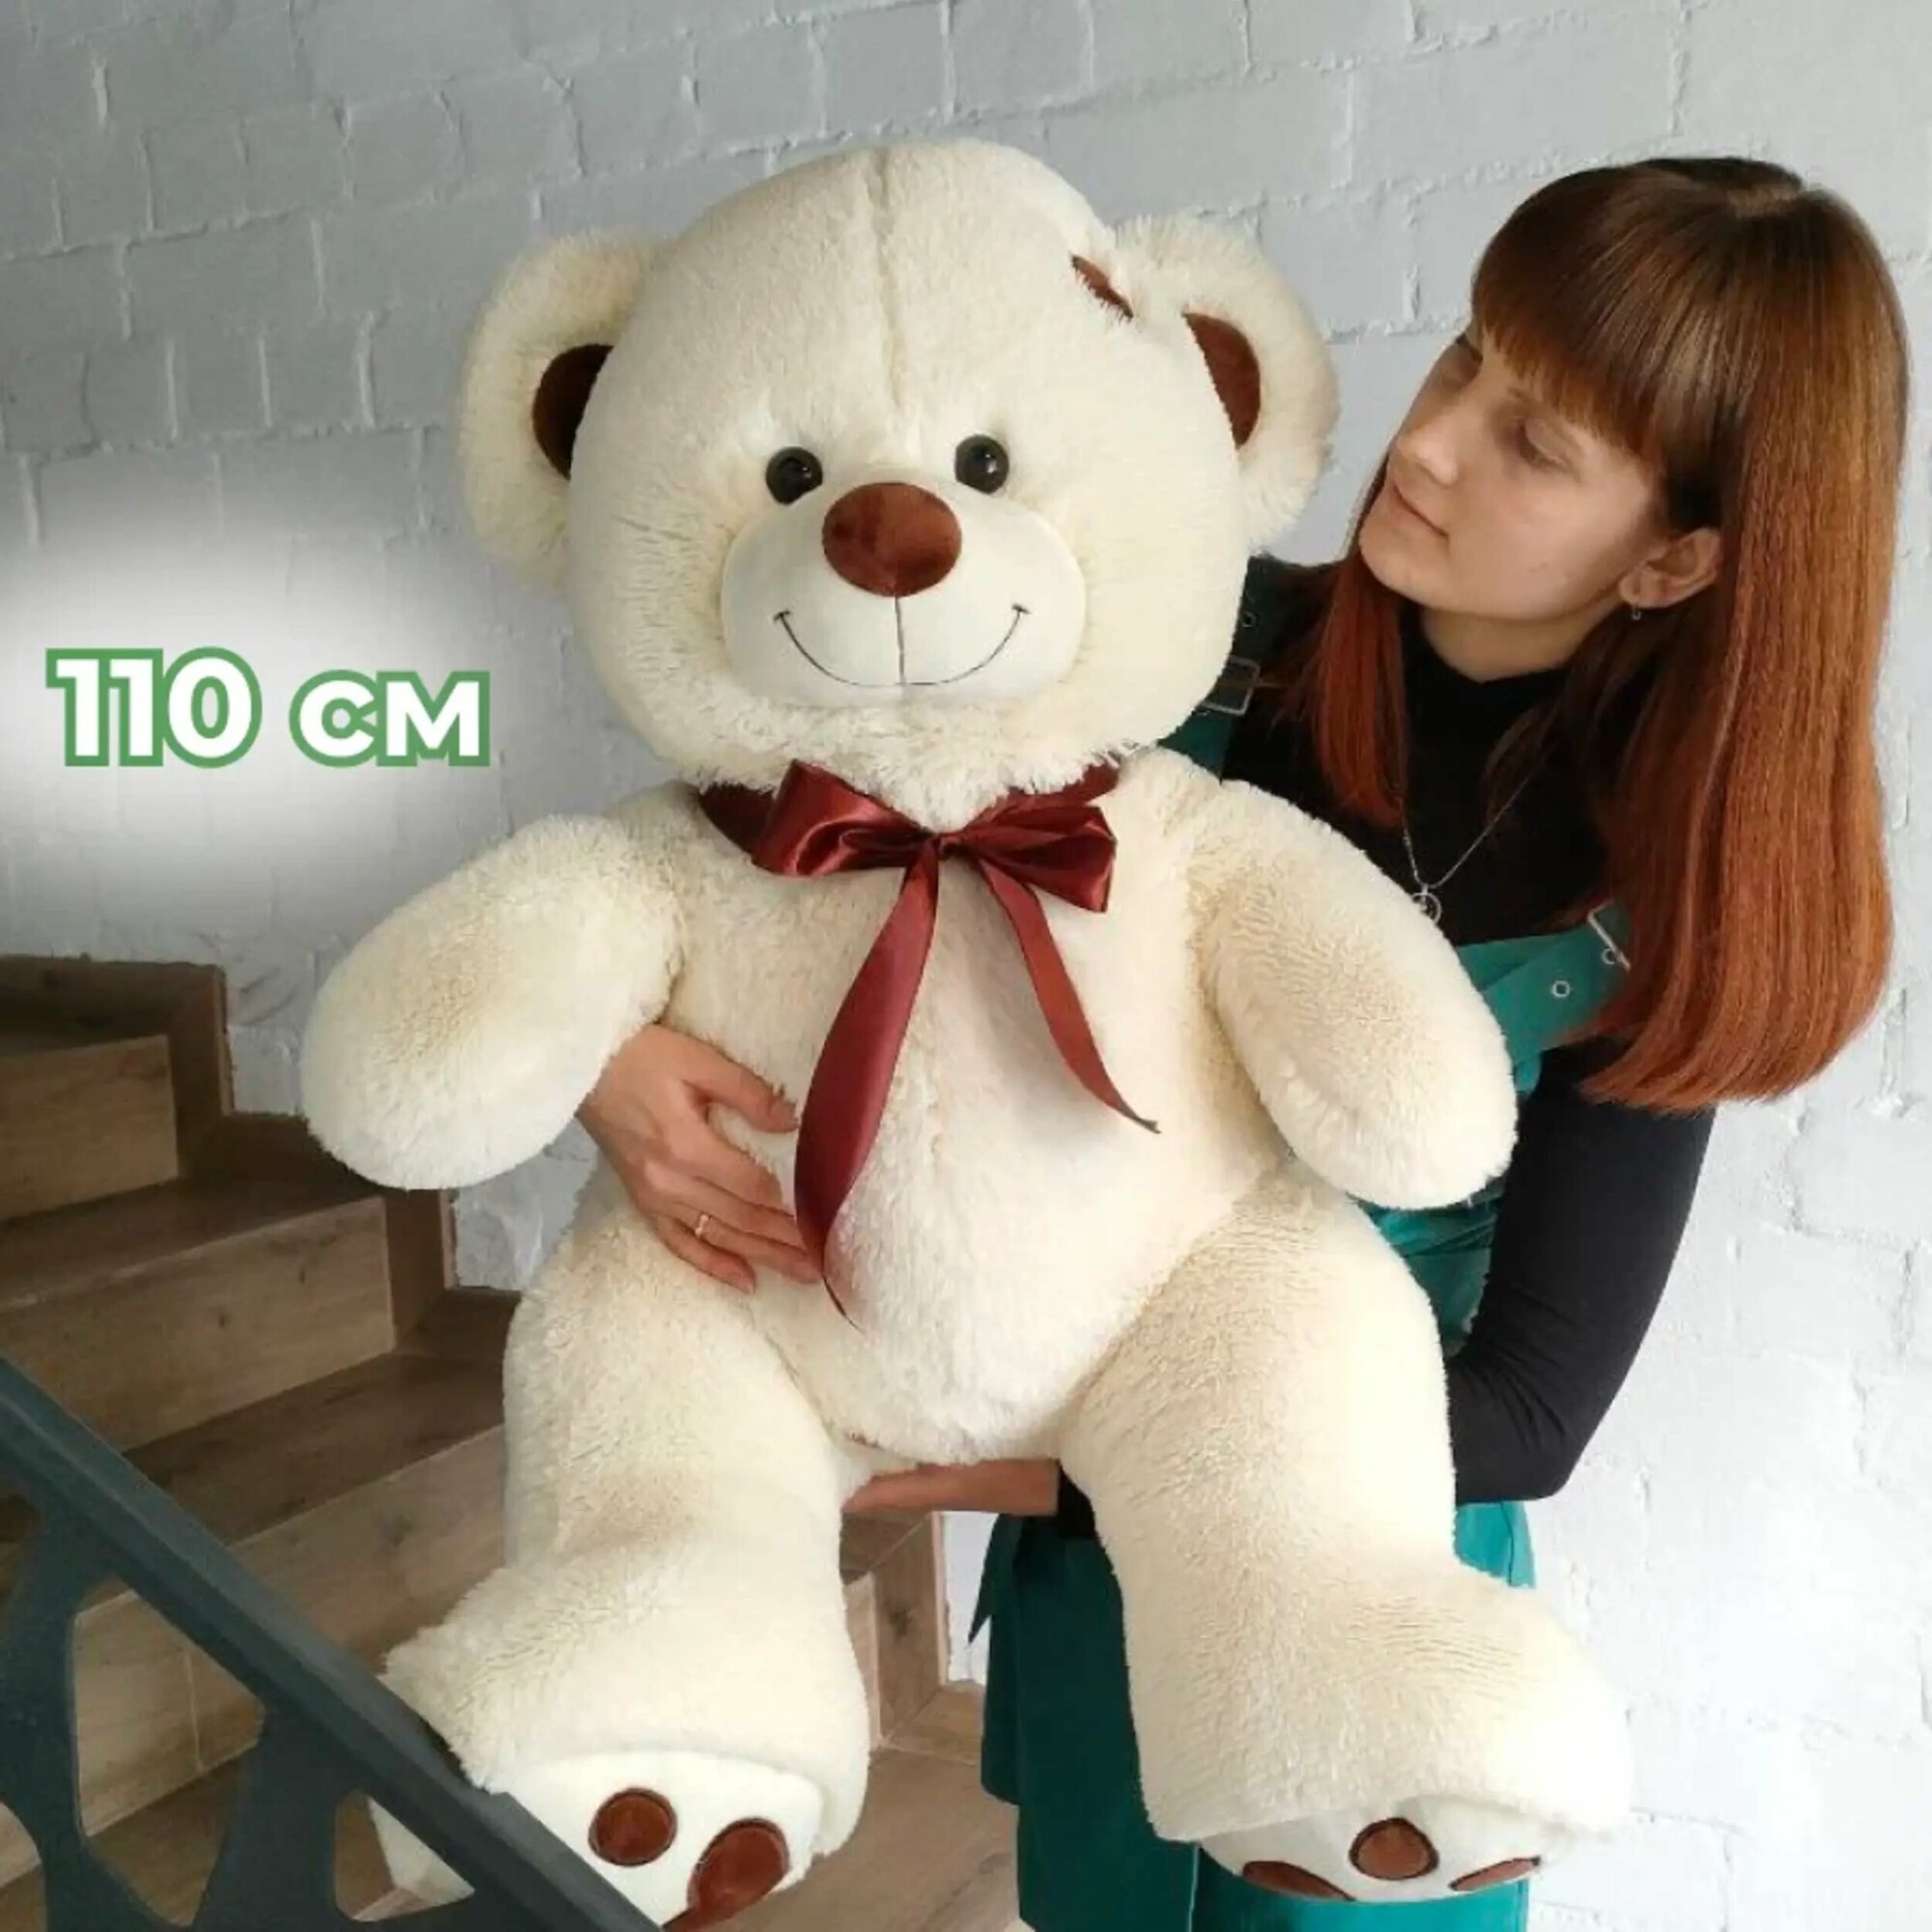 Мягкая игрушка большой плюшевый медведь Тони 110 см, плюшевый мишка, подарок девушке, ребенку на день рождение, цвет латте